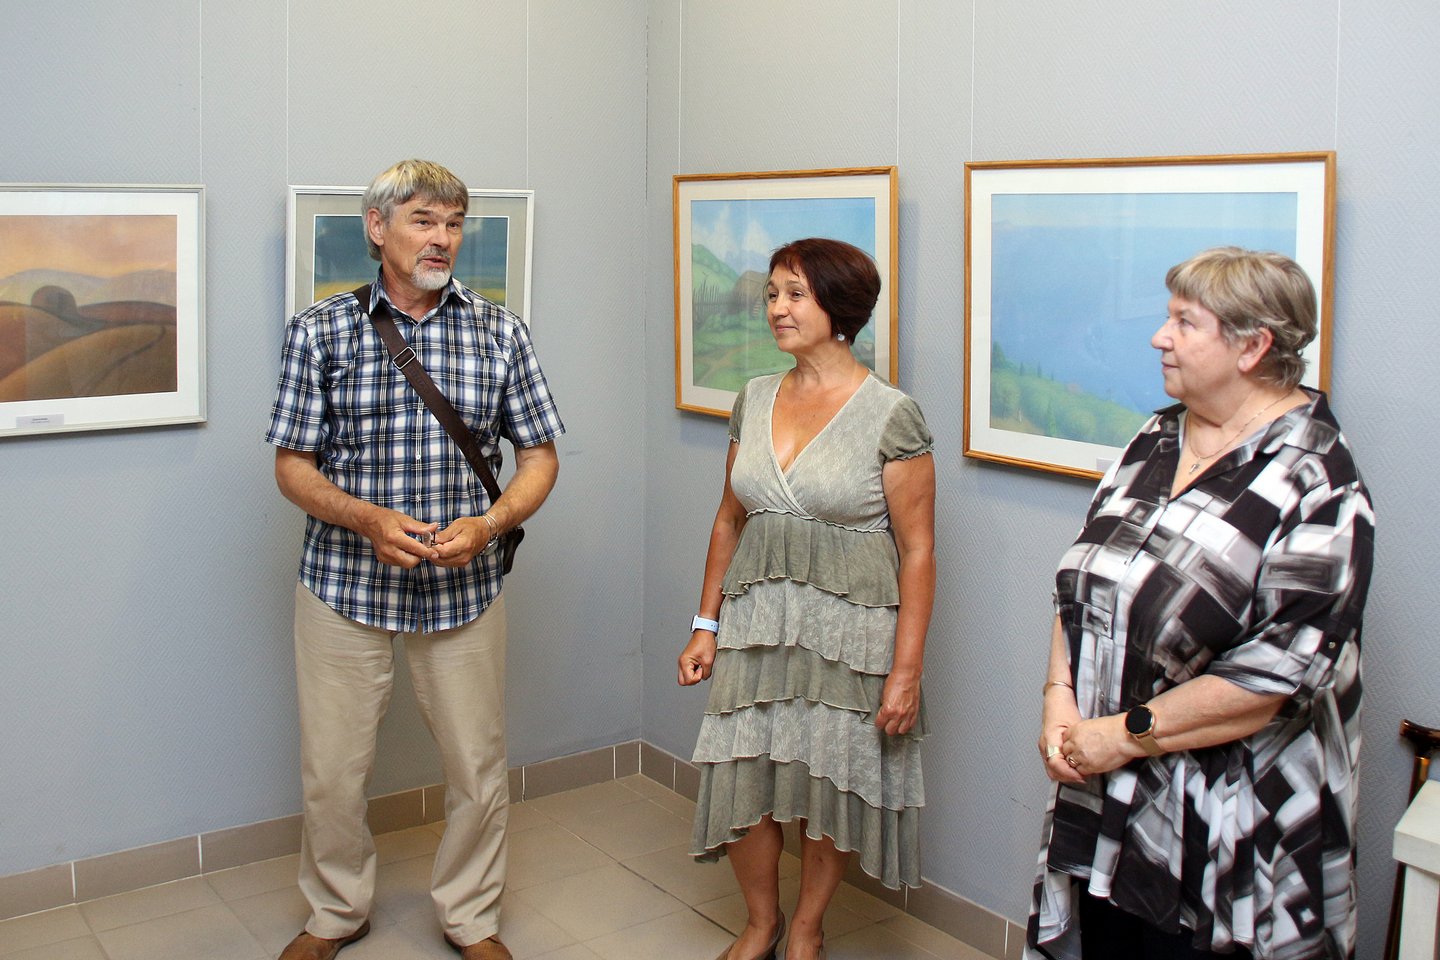 «Пастель»: открытие персональной выставки художника Владимира Калабухова в галерее «Арт–Эксперт»